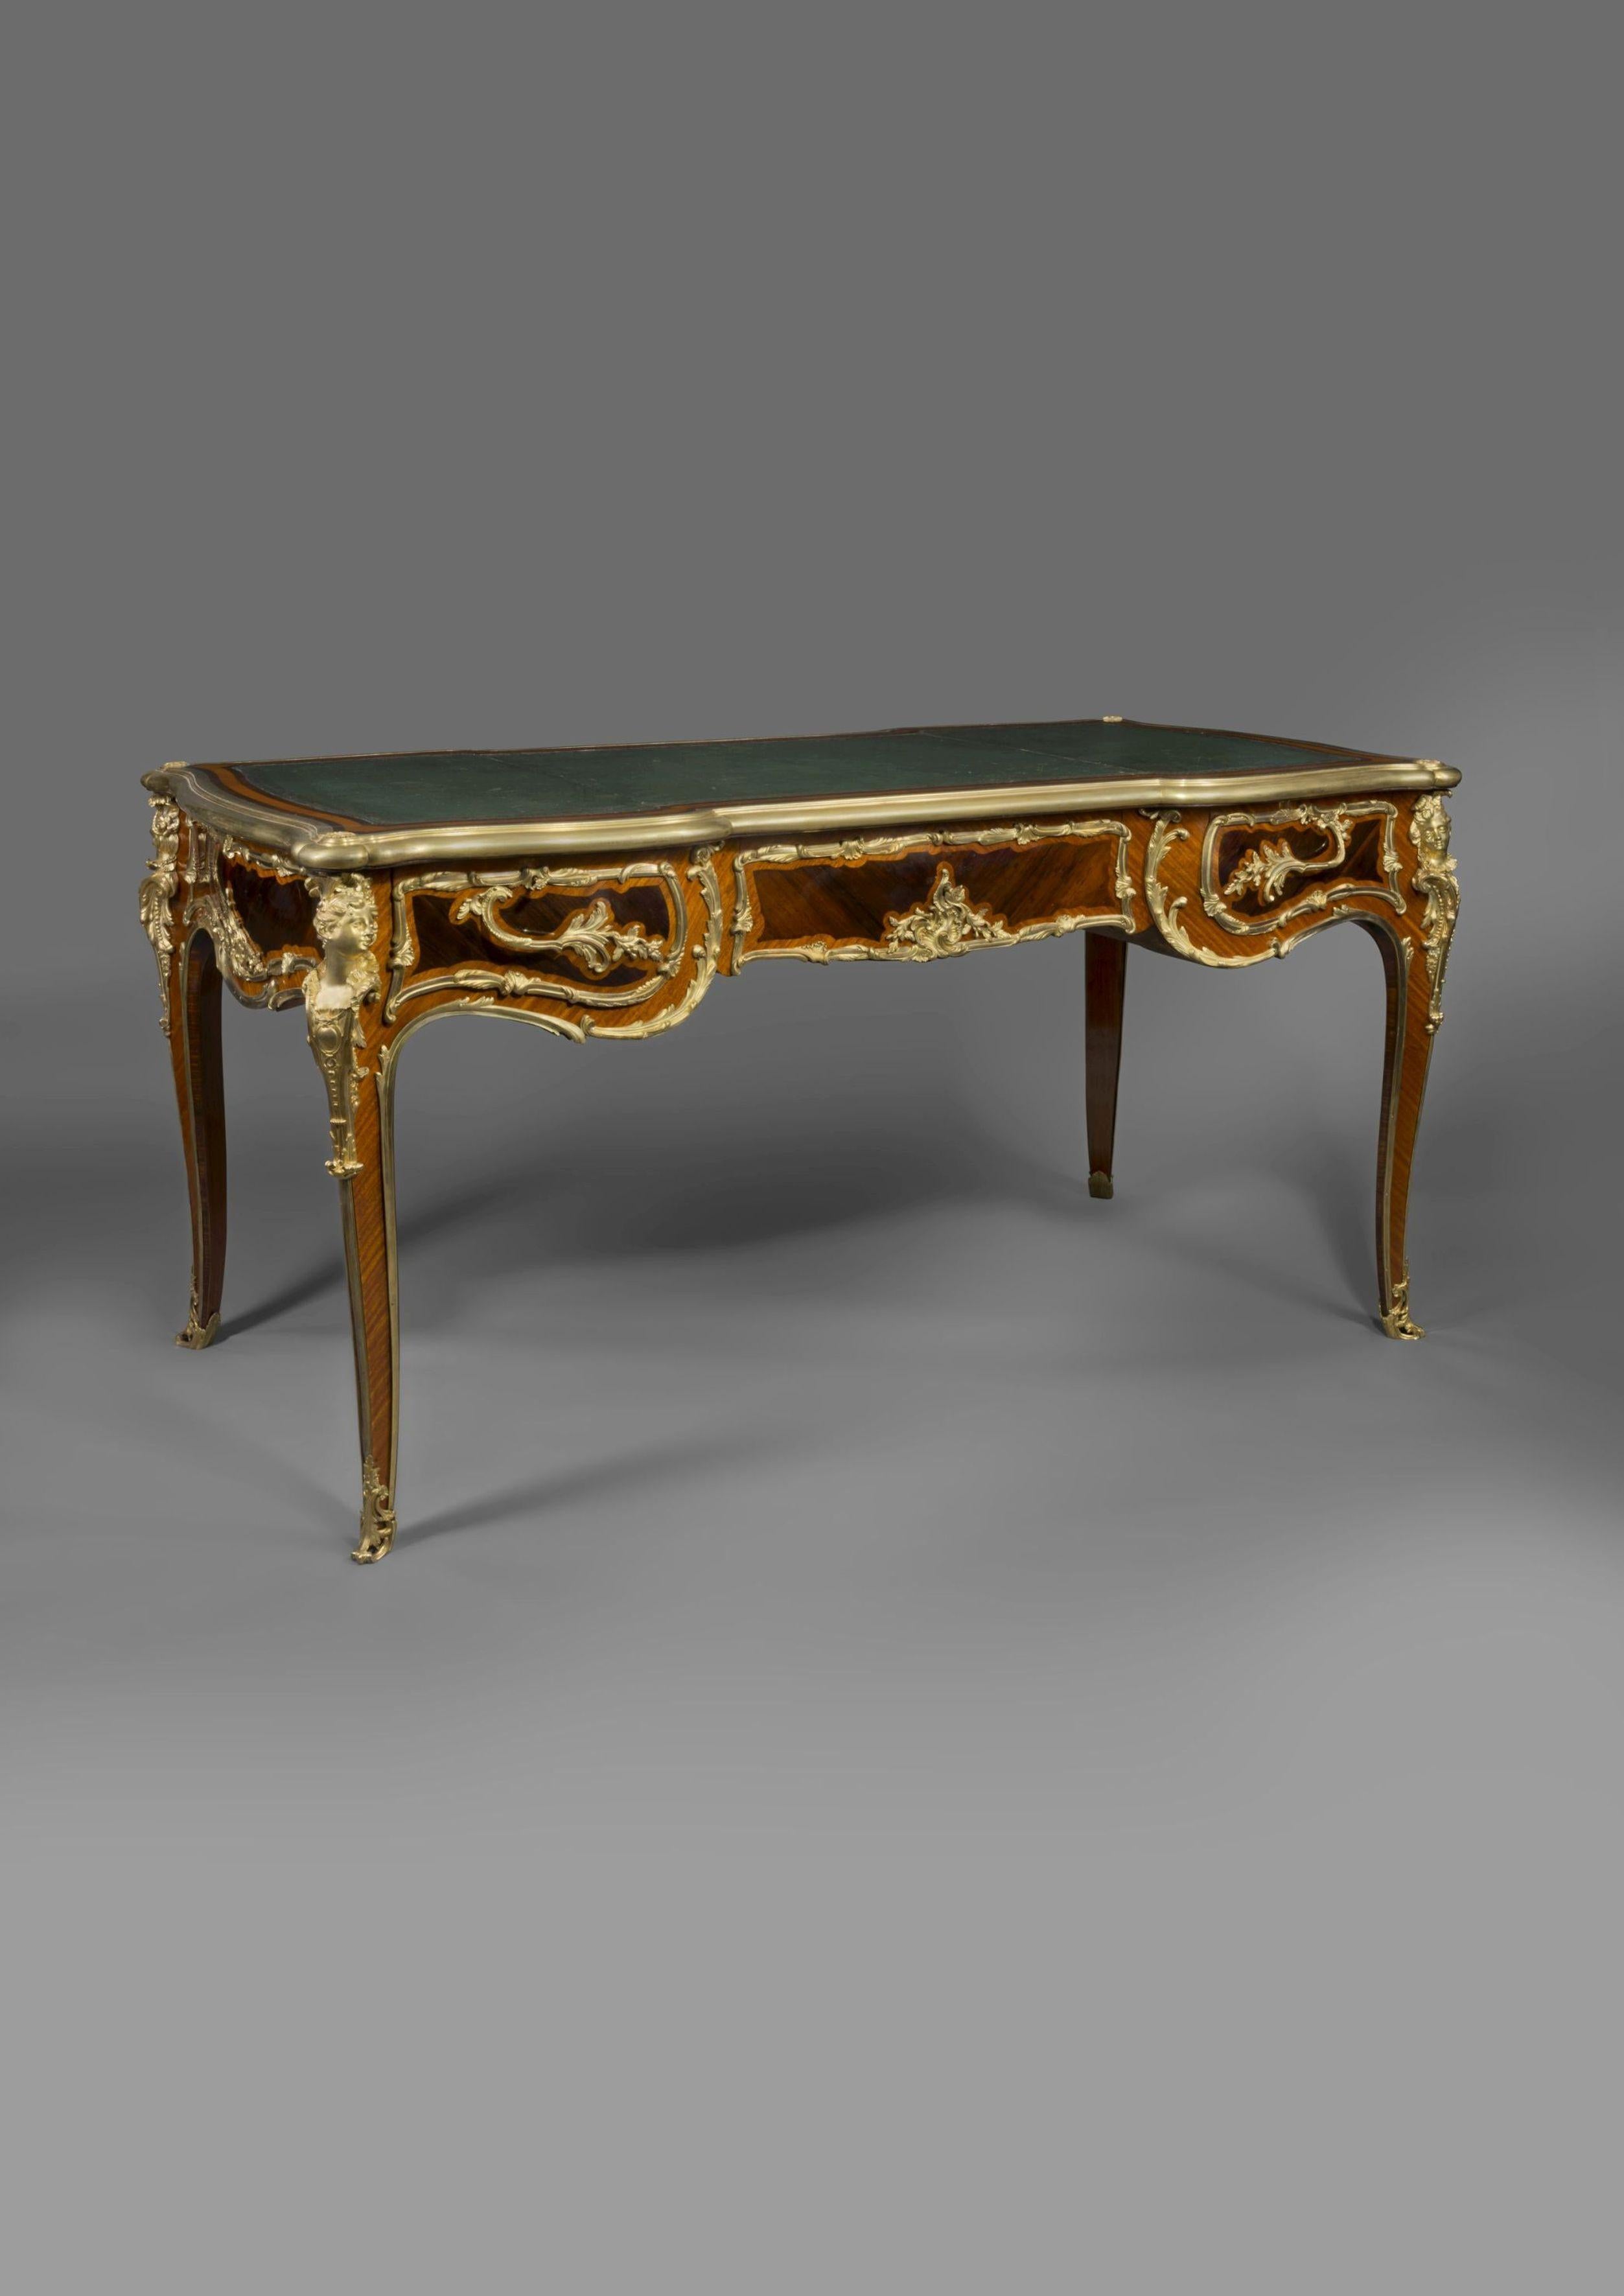 Un bureau plat de style Régence monté en bronze doré par Zwiener.

Français, datant d'environ 1890. 

Le cachet 